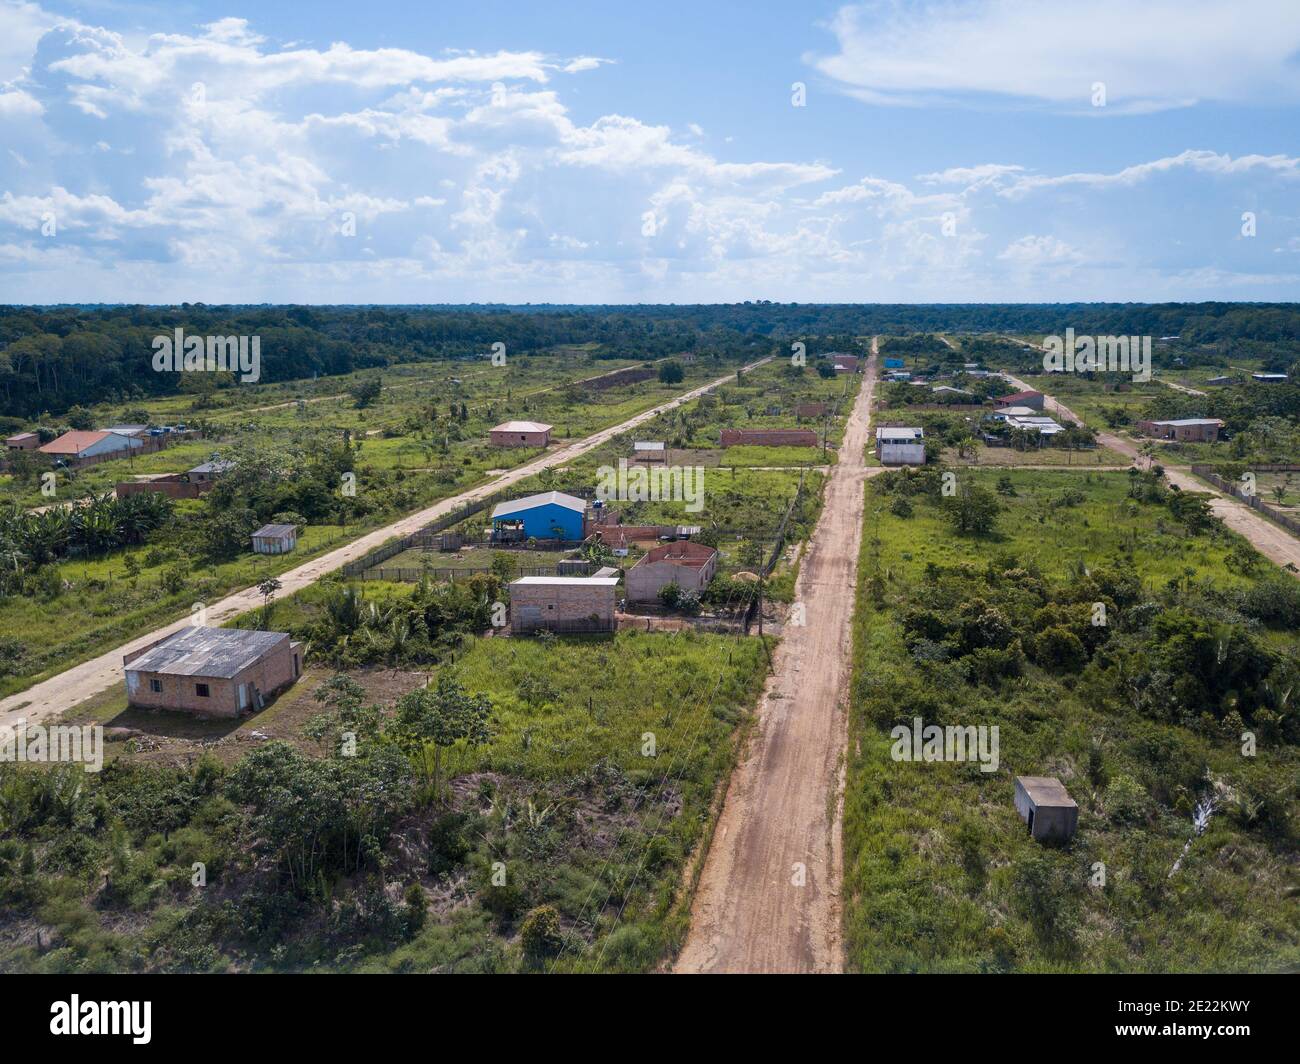 Vue aérienne par drone des petites maisons de village sur la route BR 319, ville de Porto Velho à Rondônia, Brésil. Concept d'écologie, de conservation, de questions sociales. Banque D'Images